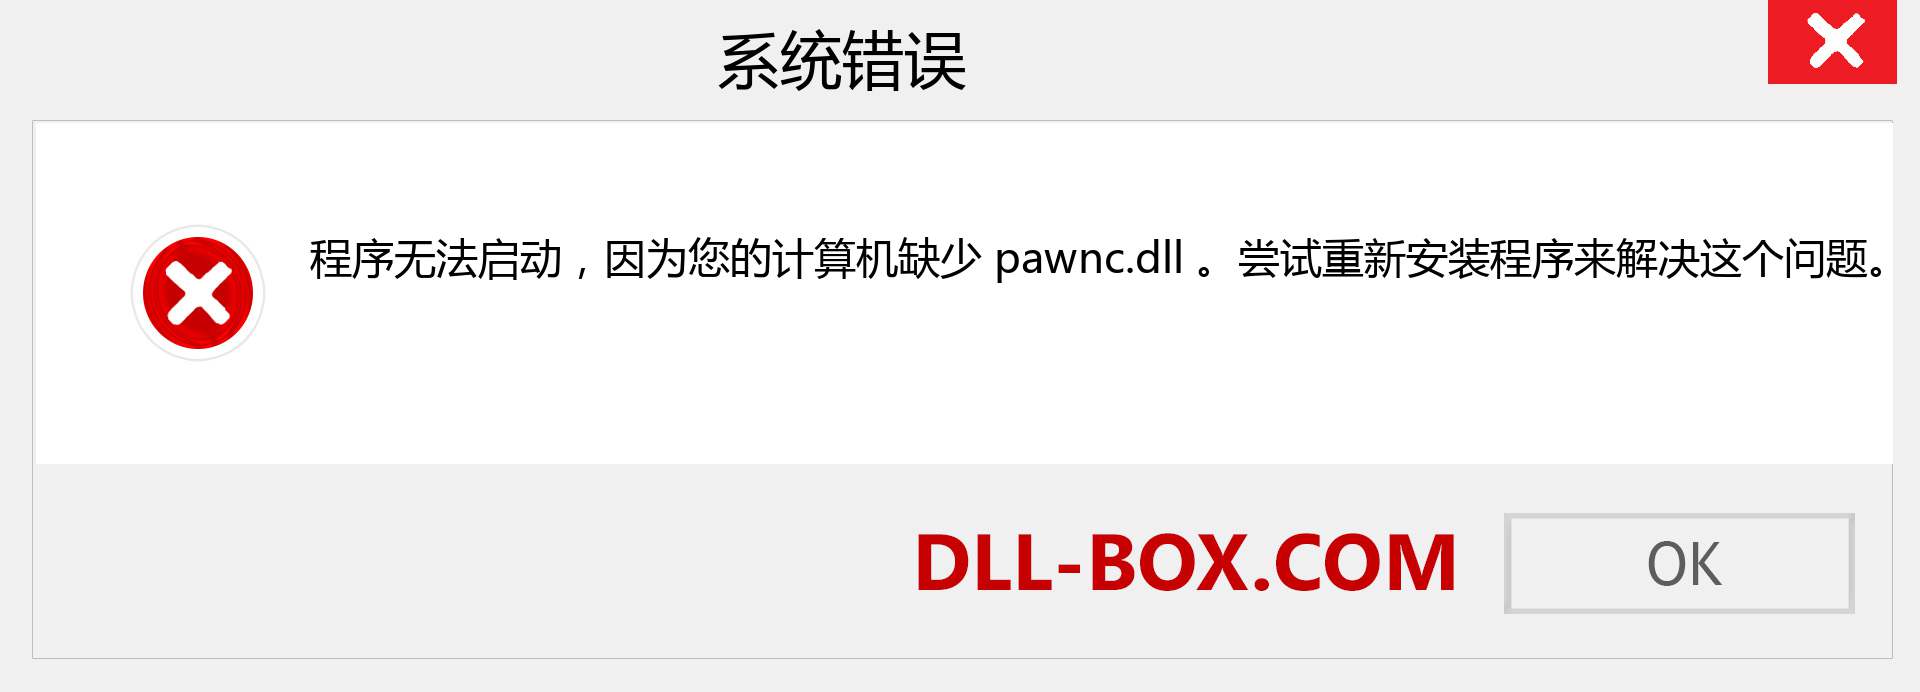 pawnc.dll 文件丢失？。 适用于 Windows 7、8、10 的下载 - 修复 Windows、照片、图像上的 pawnc dll 丢失错误